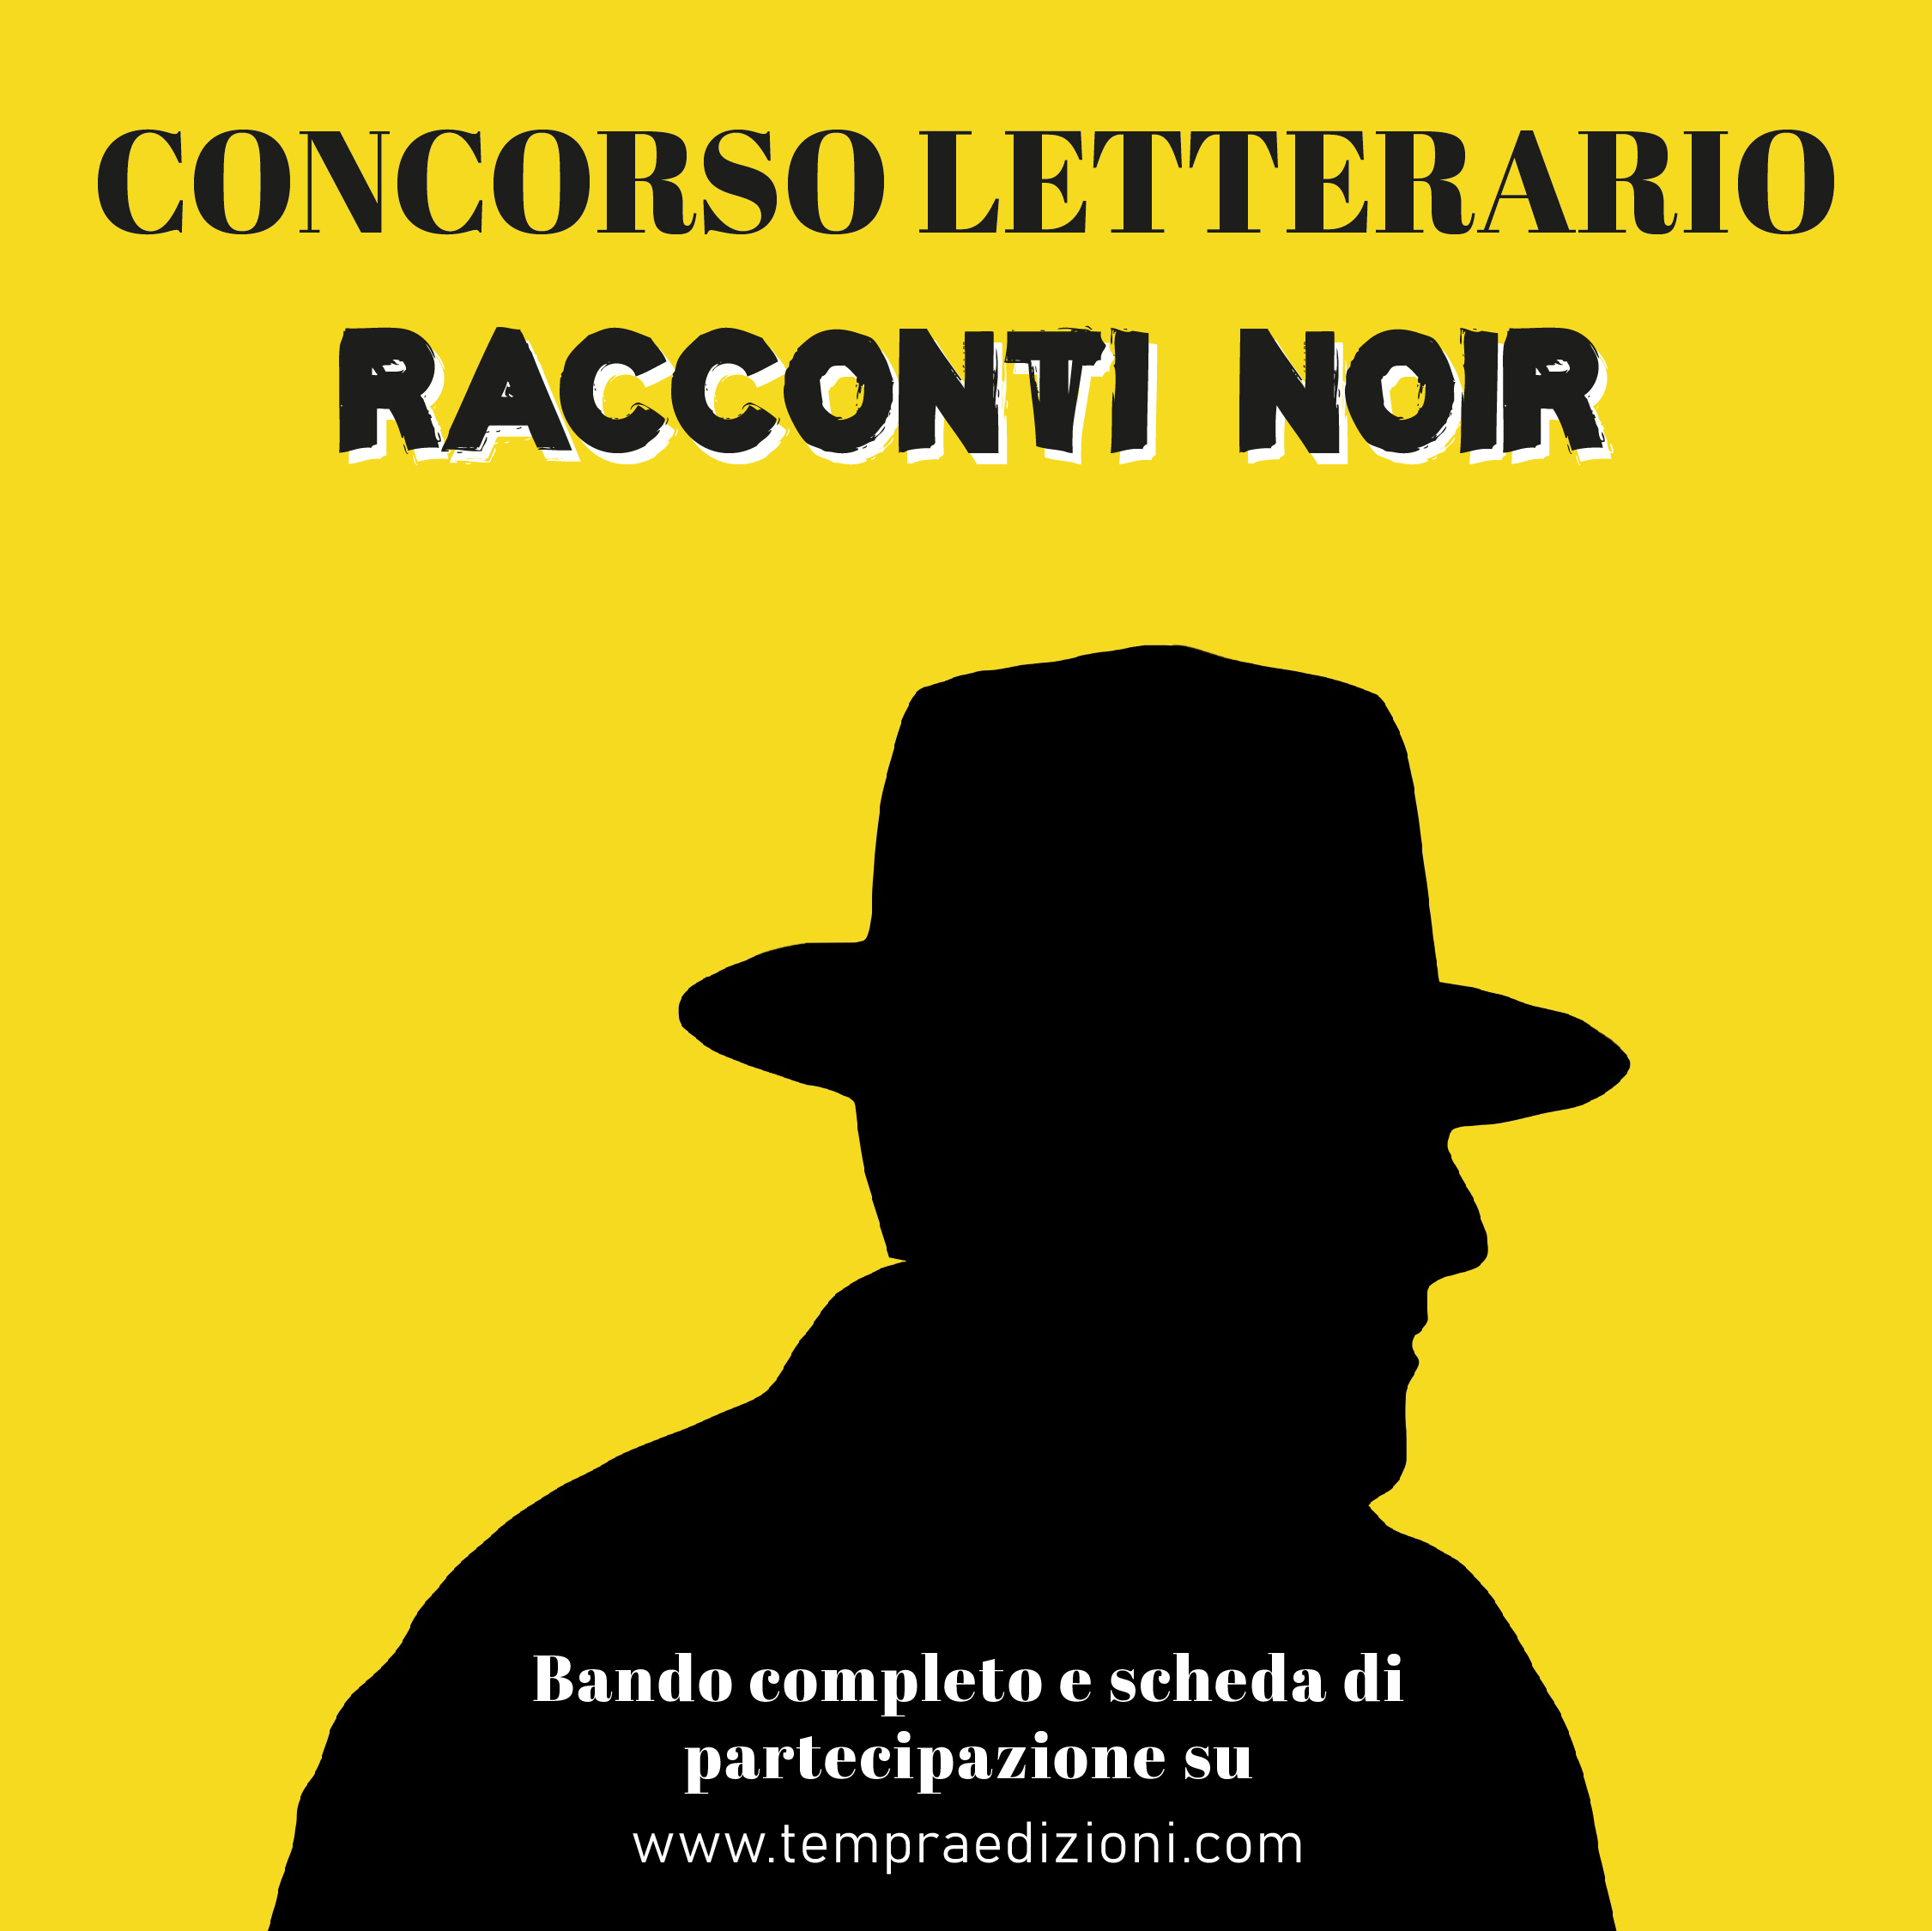 CONCORSO LETTERARIO "RACCONTI NOIR"